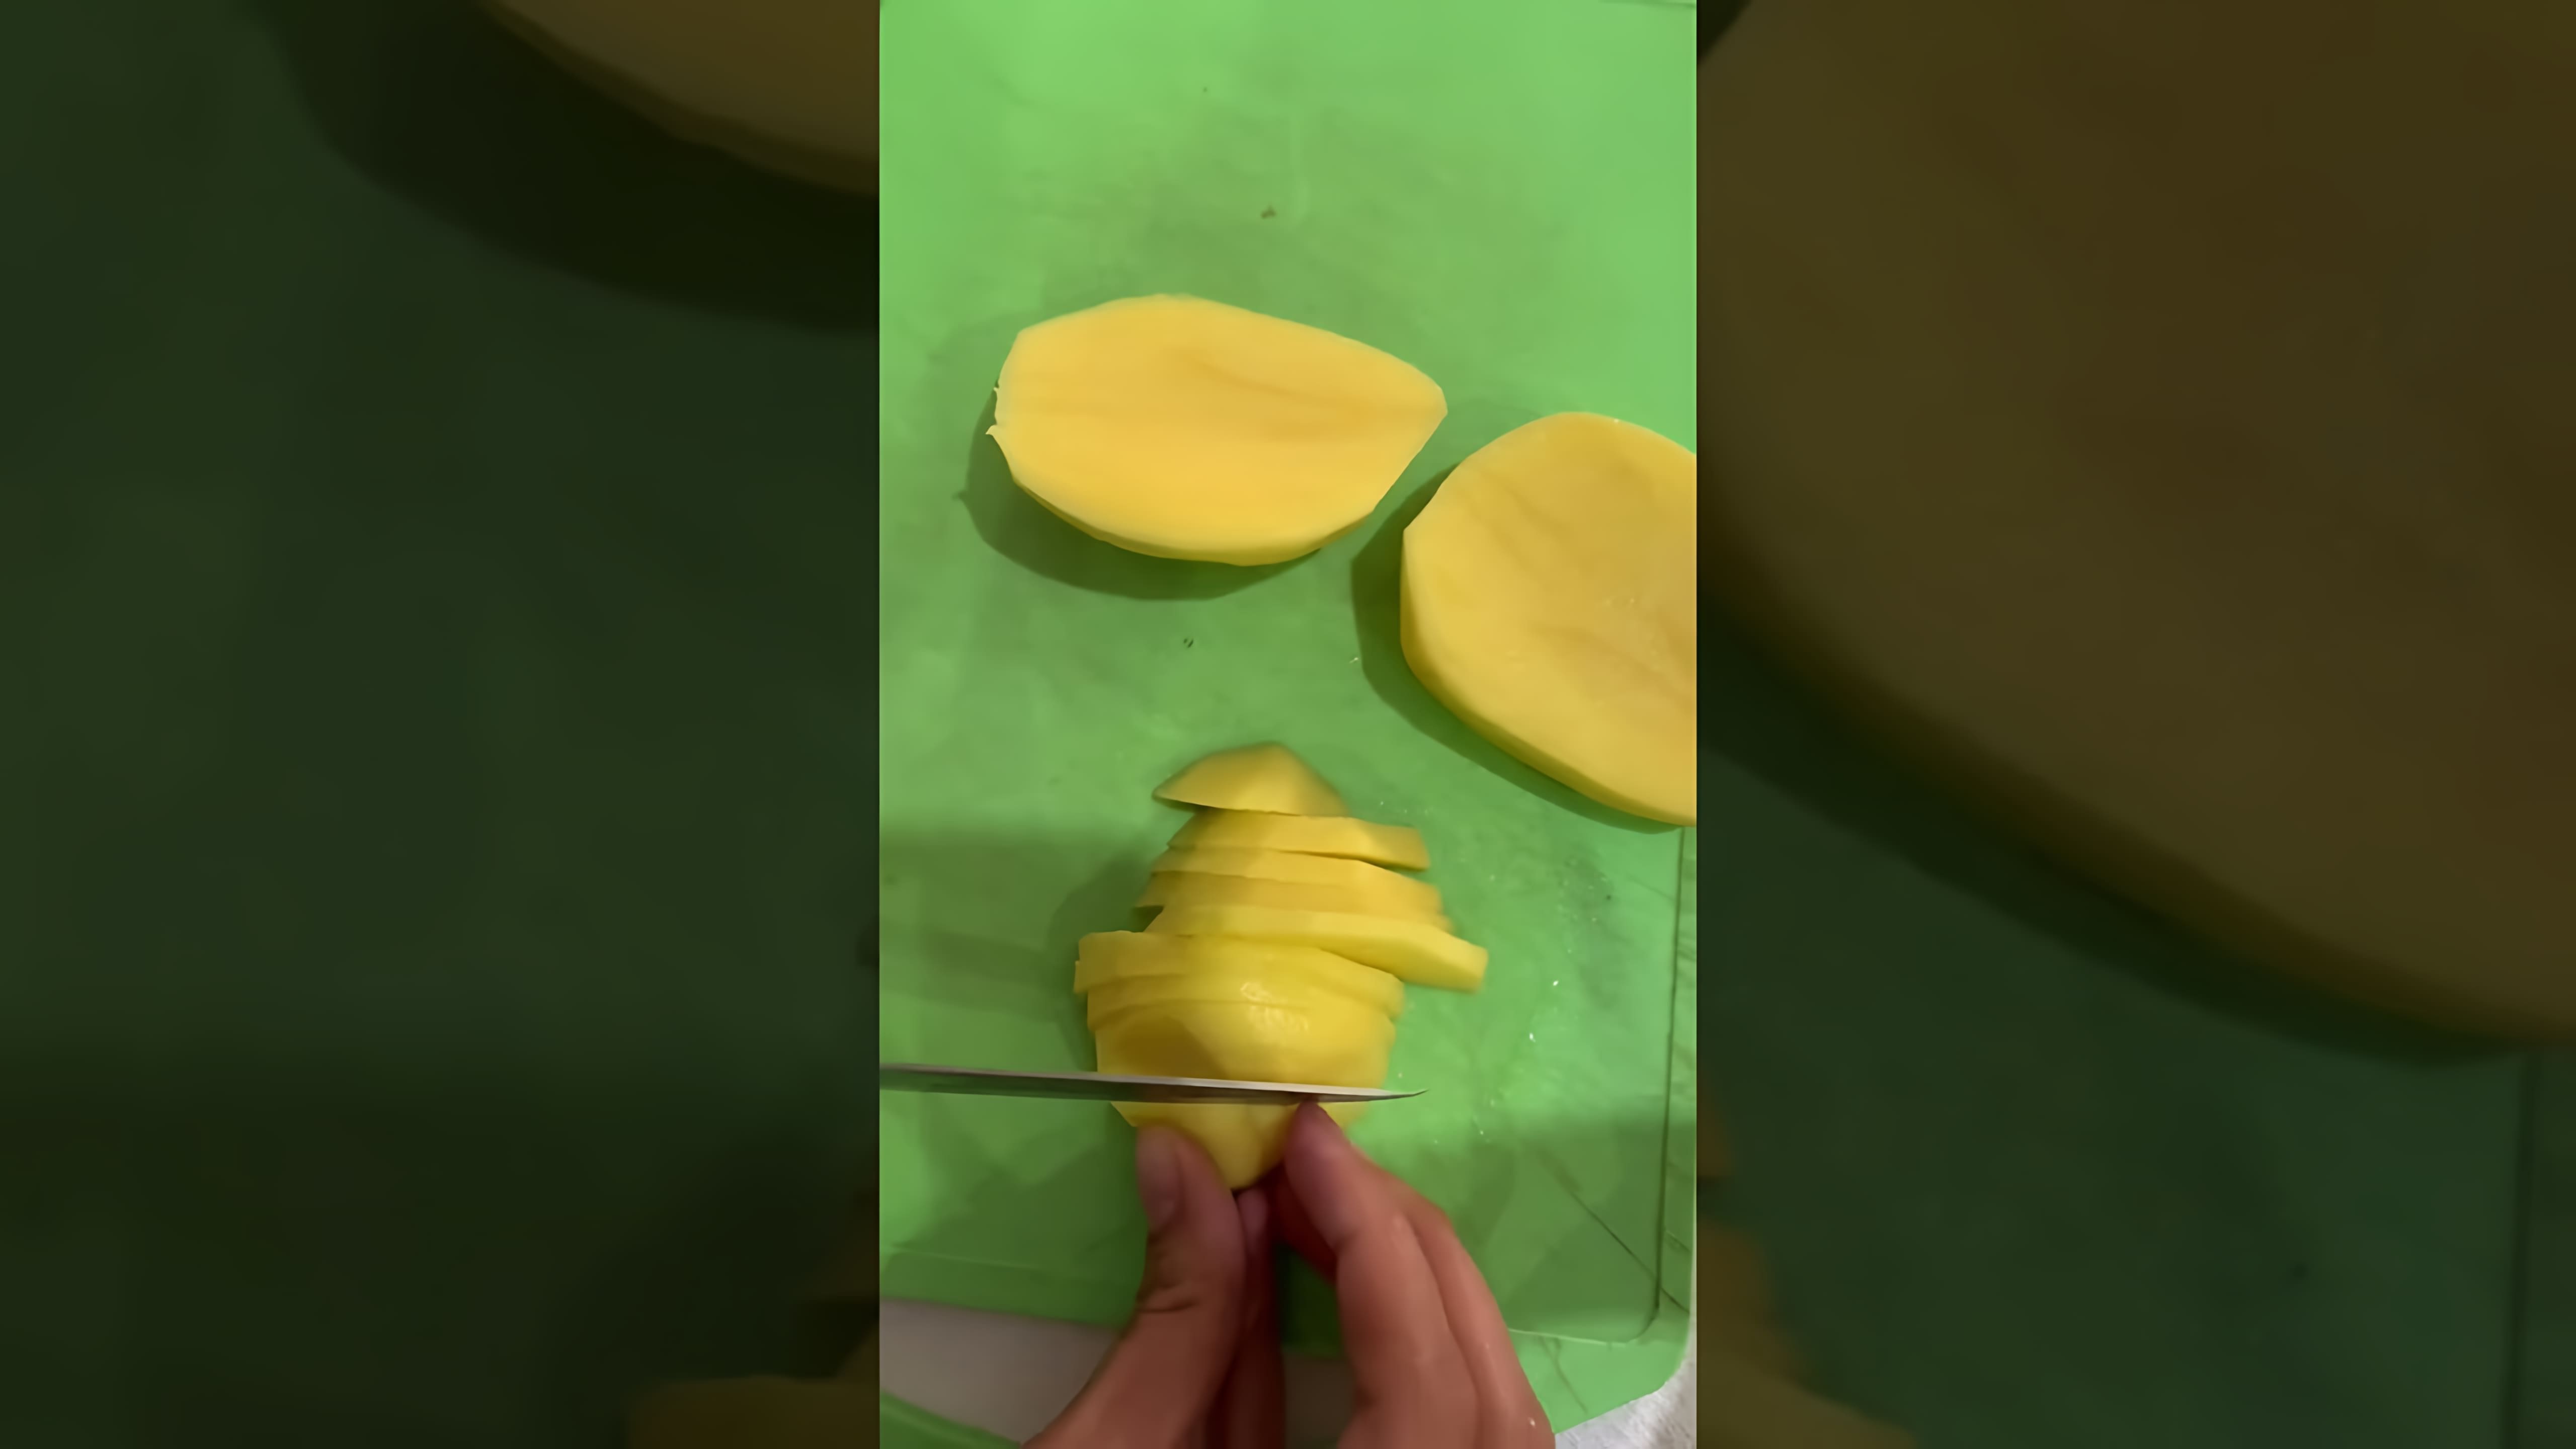 В этом видео демонстрируется процесс приготовления вкусного и простого блюда - картошки с шампиньонами